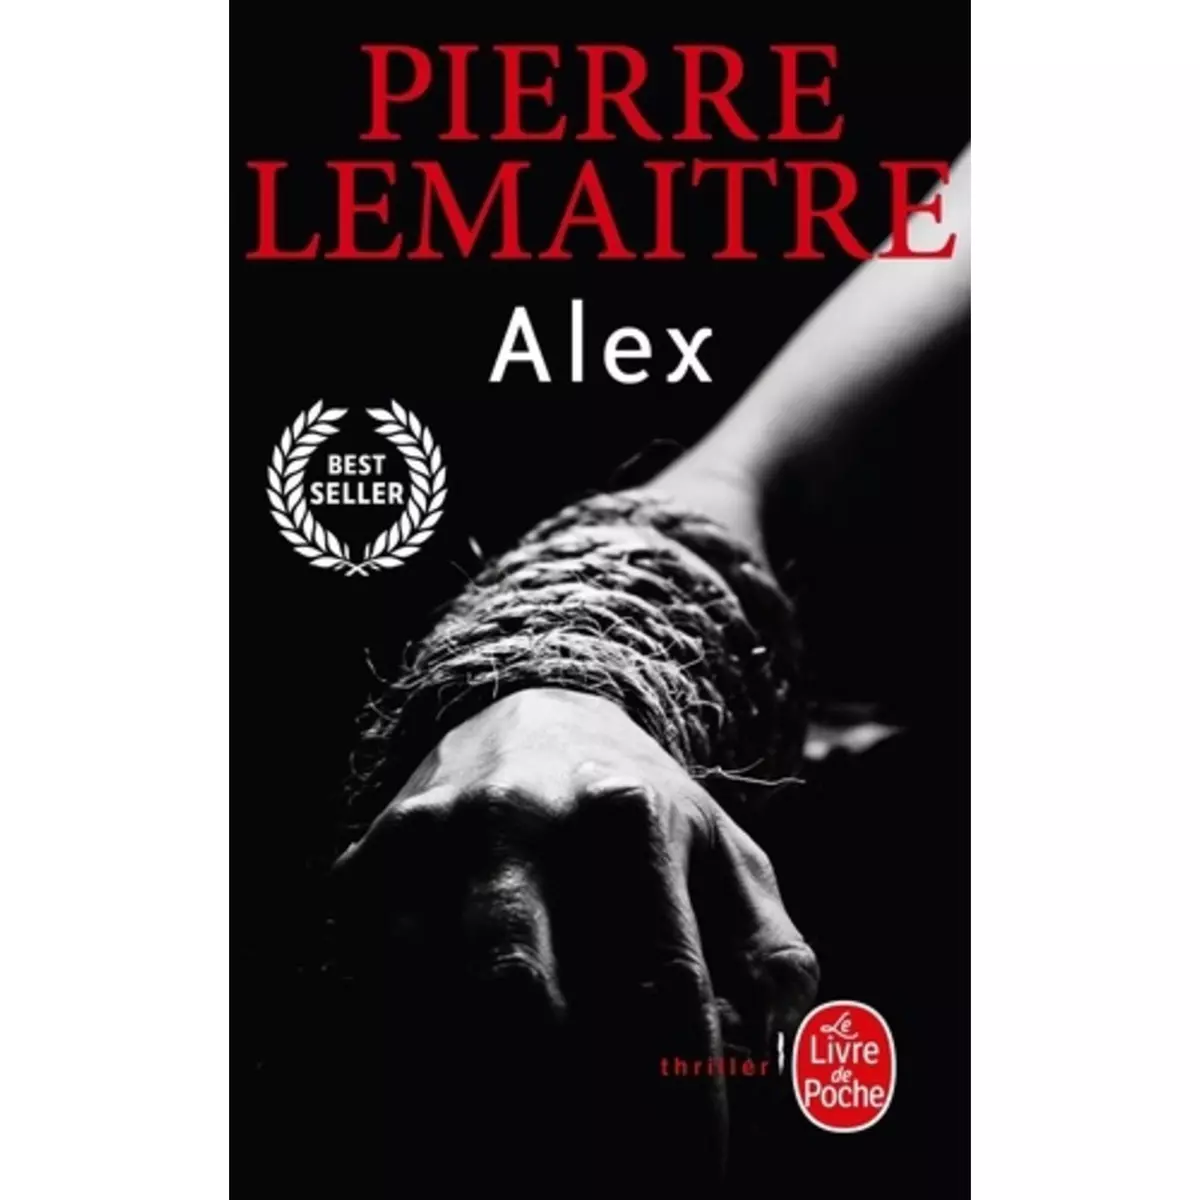  LA TRILOGIE VERHOEVEN TOME 2 : ALEX, Lemaitre Pierre